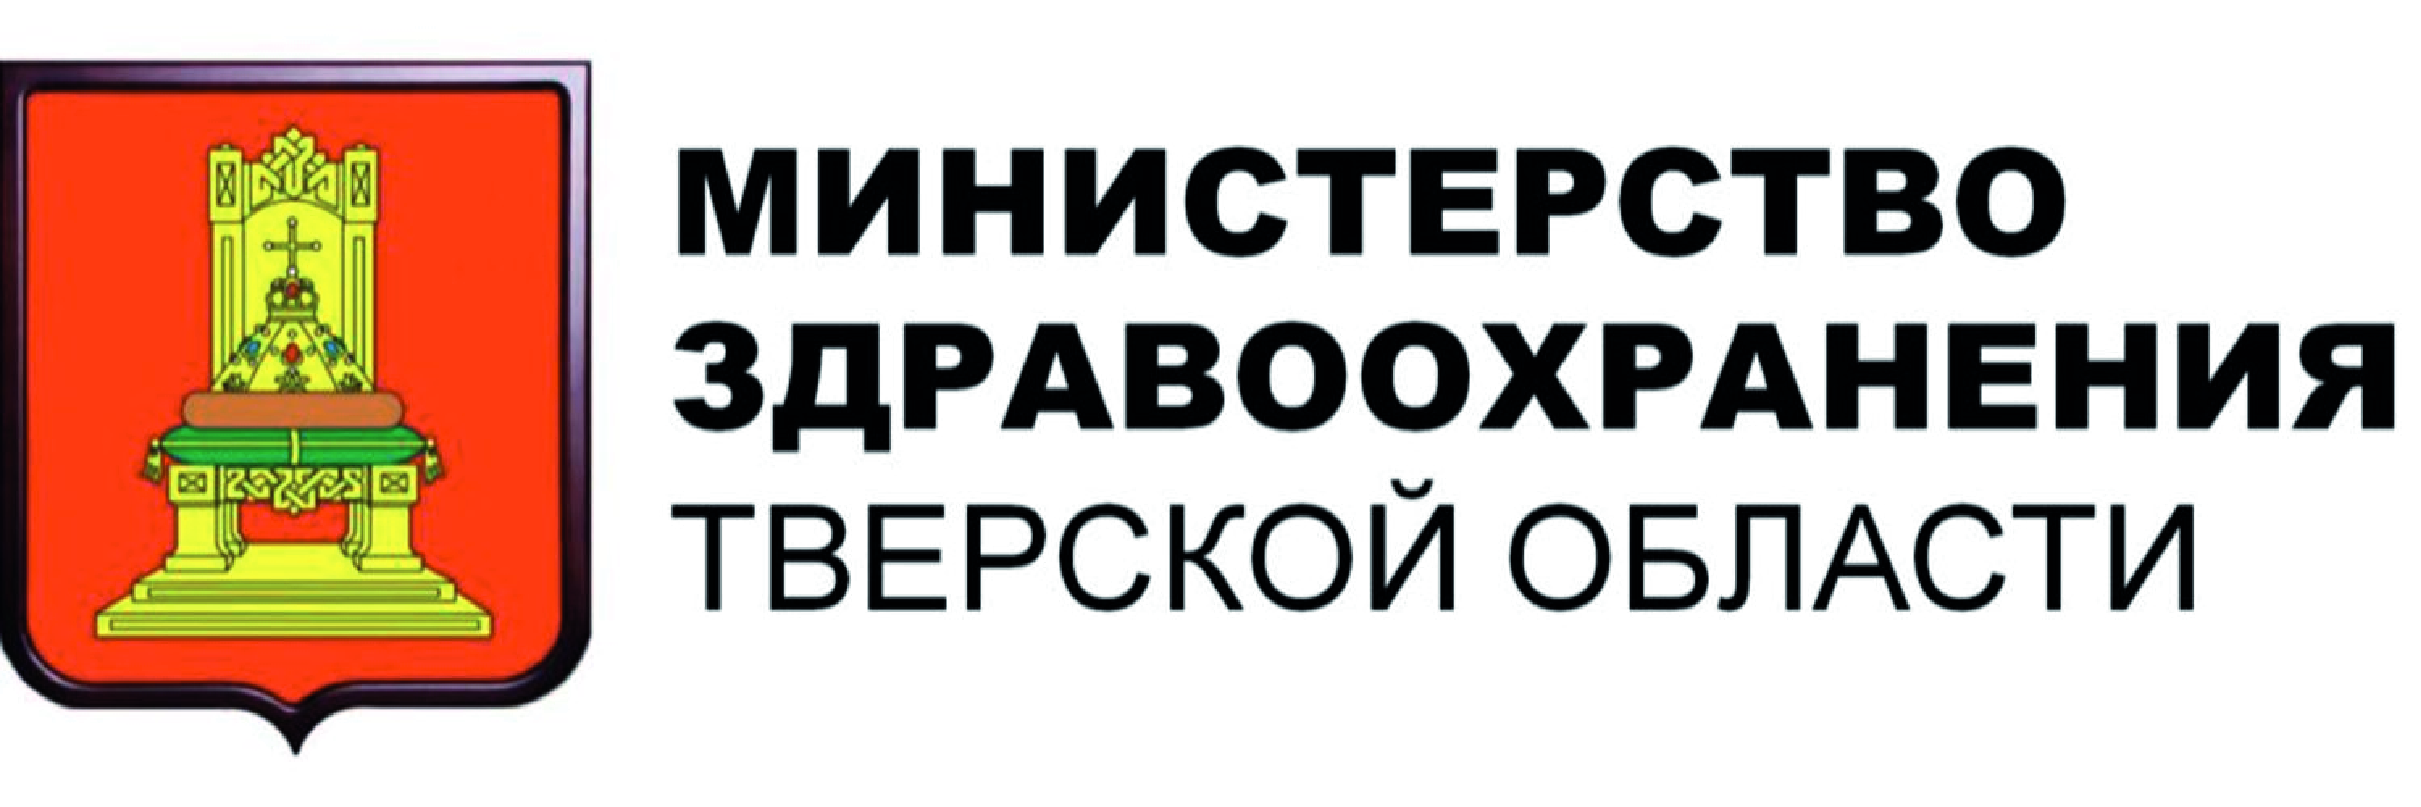 Министерство здравоохранения Тверской области